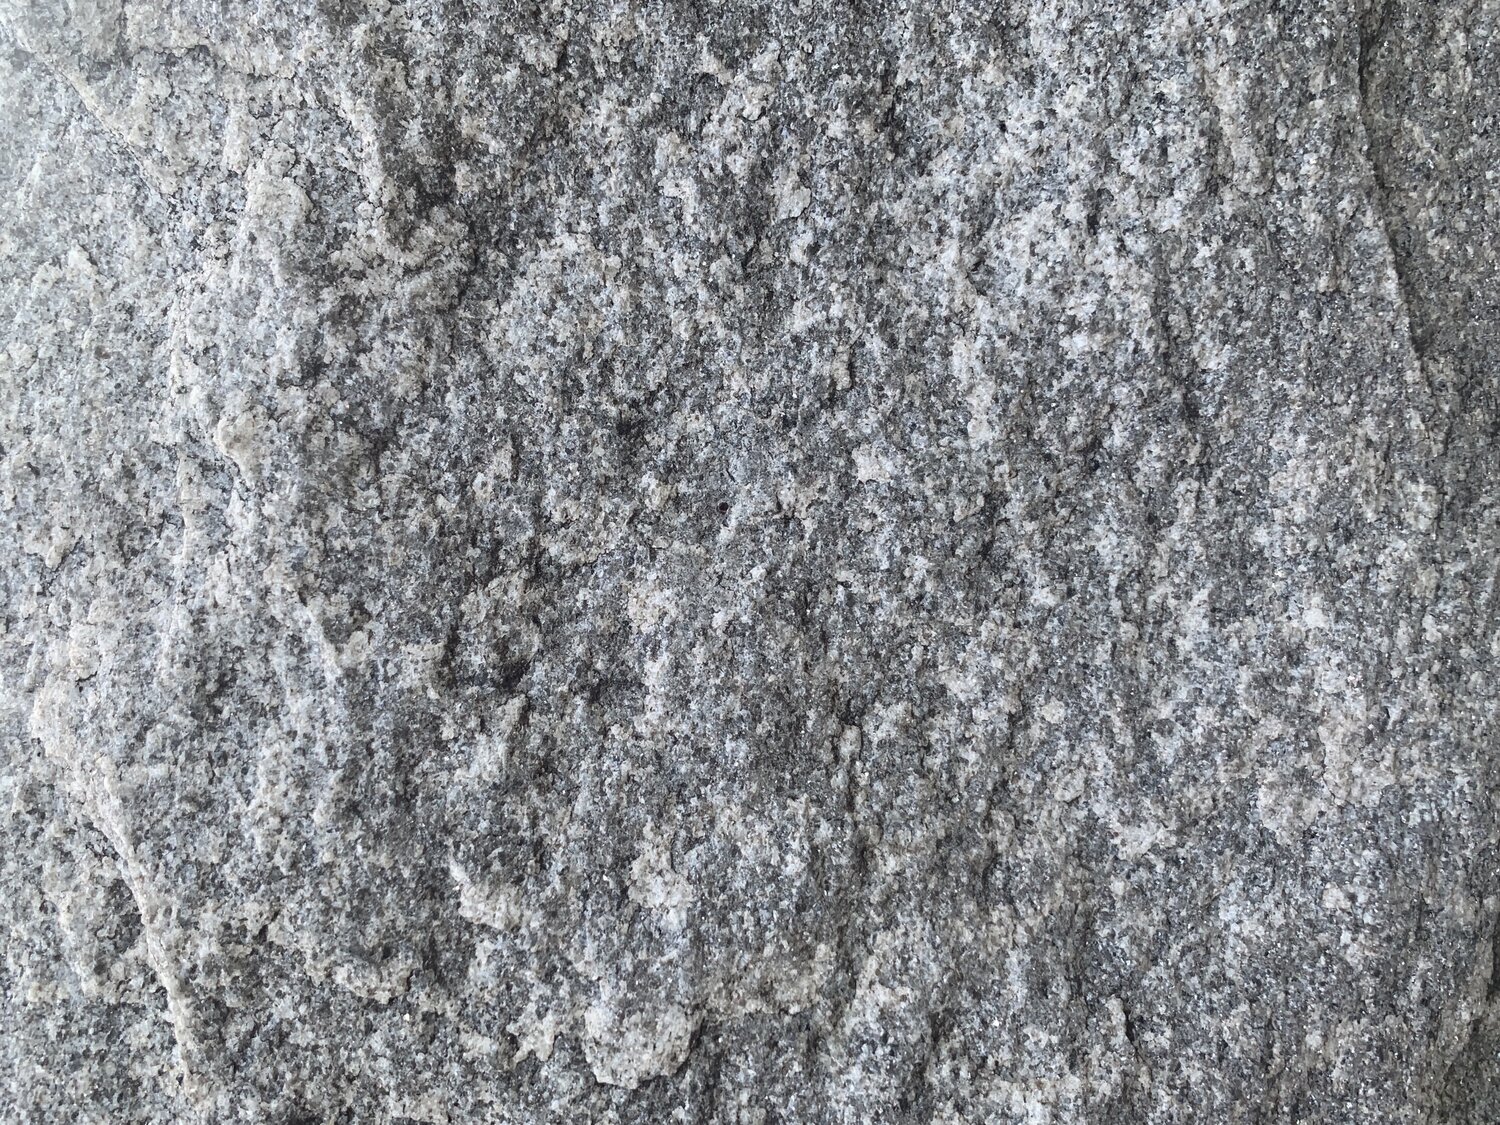 Granite+base+close+up